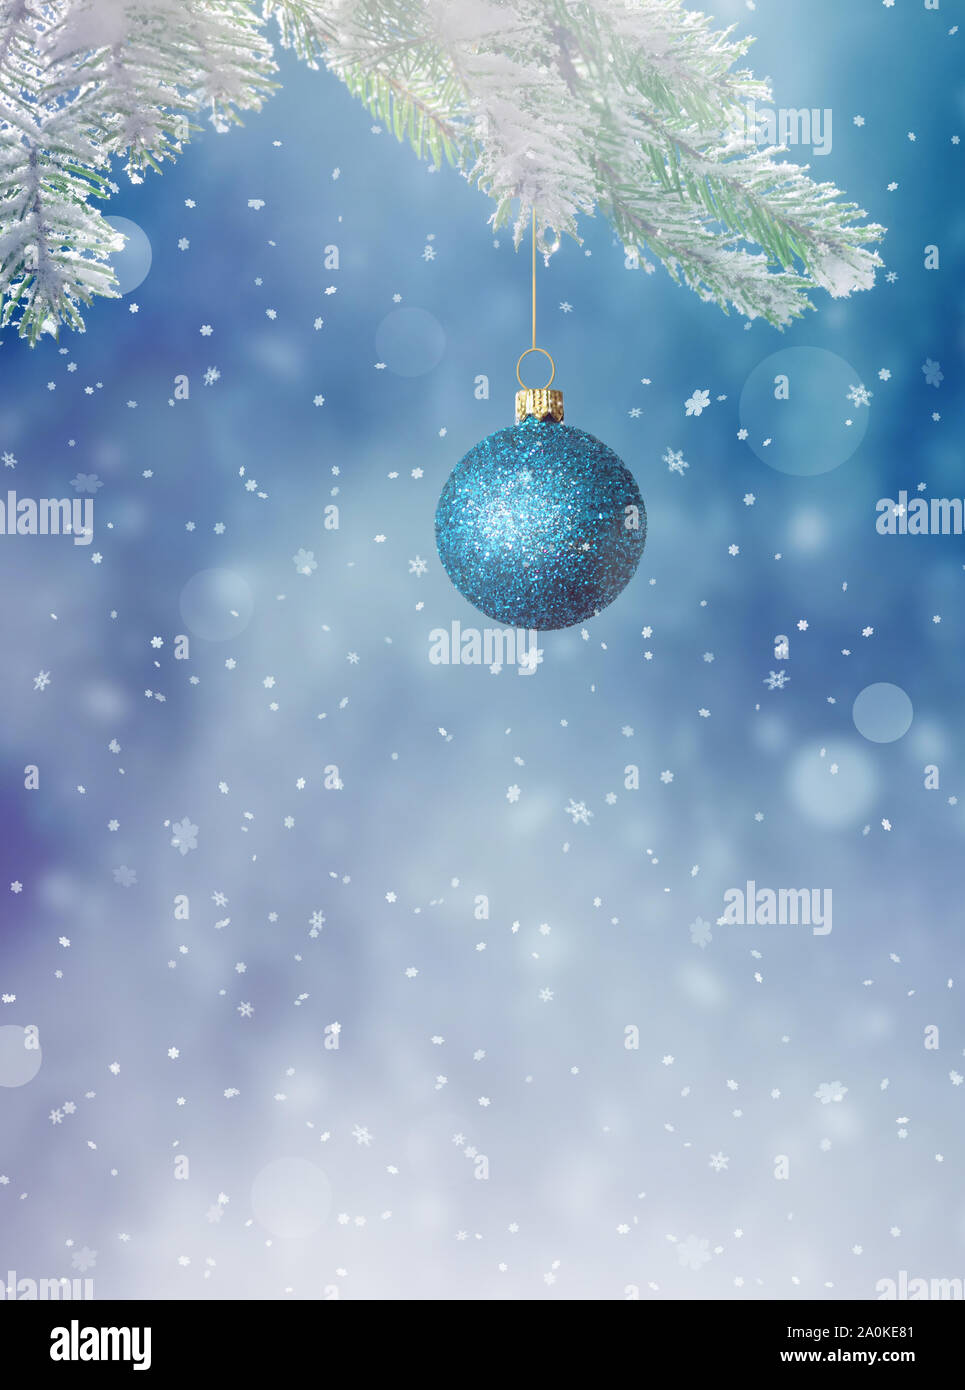 Weihnachten Hintergrund. Winter verschneite Tanne Zweig und blauen Himmel als Hintergrund. Christmas Ball. Winter Weihnachten Konzept. Stockfoto